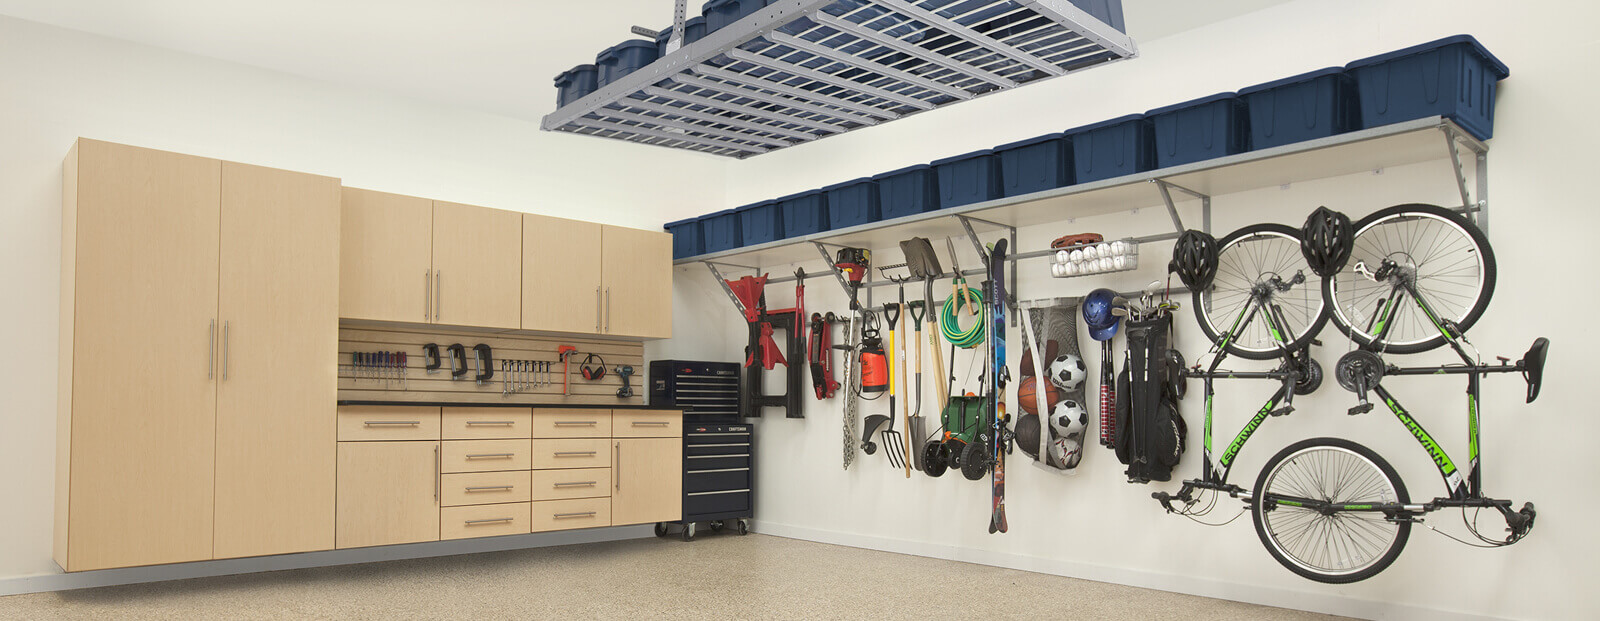 Garage Storage & Organization Systems